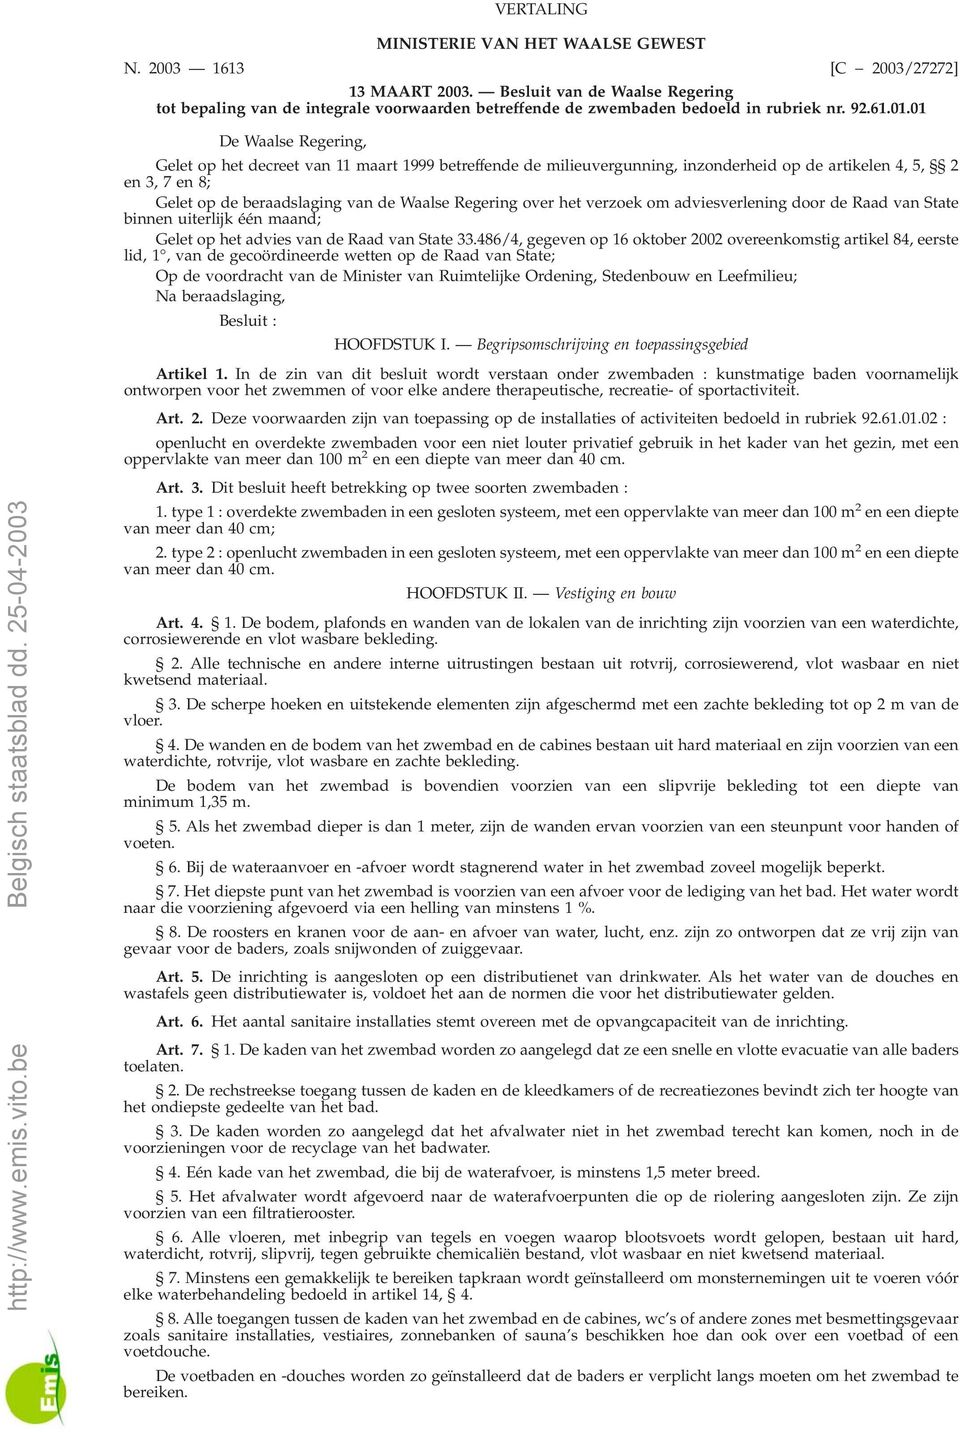 01 De Waalse Regering, Gelet op het decreet van 11 maart 1999 betreffende de milieuvergunning, inzonderheid op de artikelen 4, 5, 2 en3,7en8; Gelet op de beraadslaging van de Waalse Regering over het